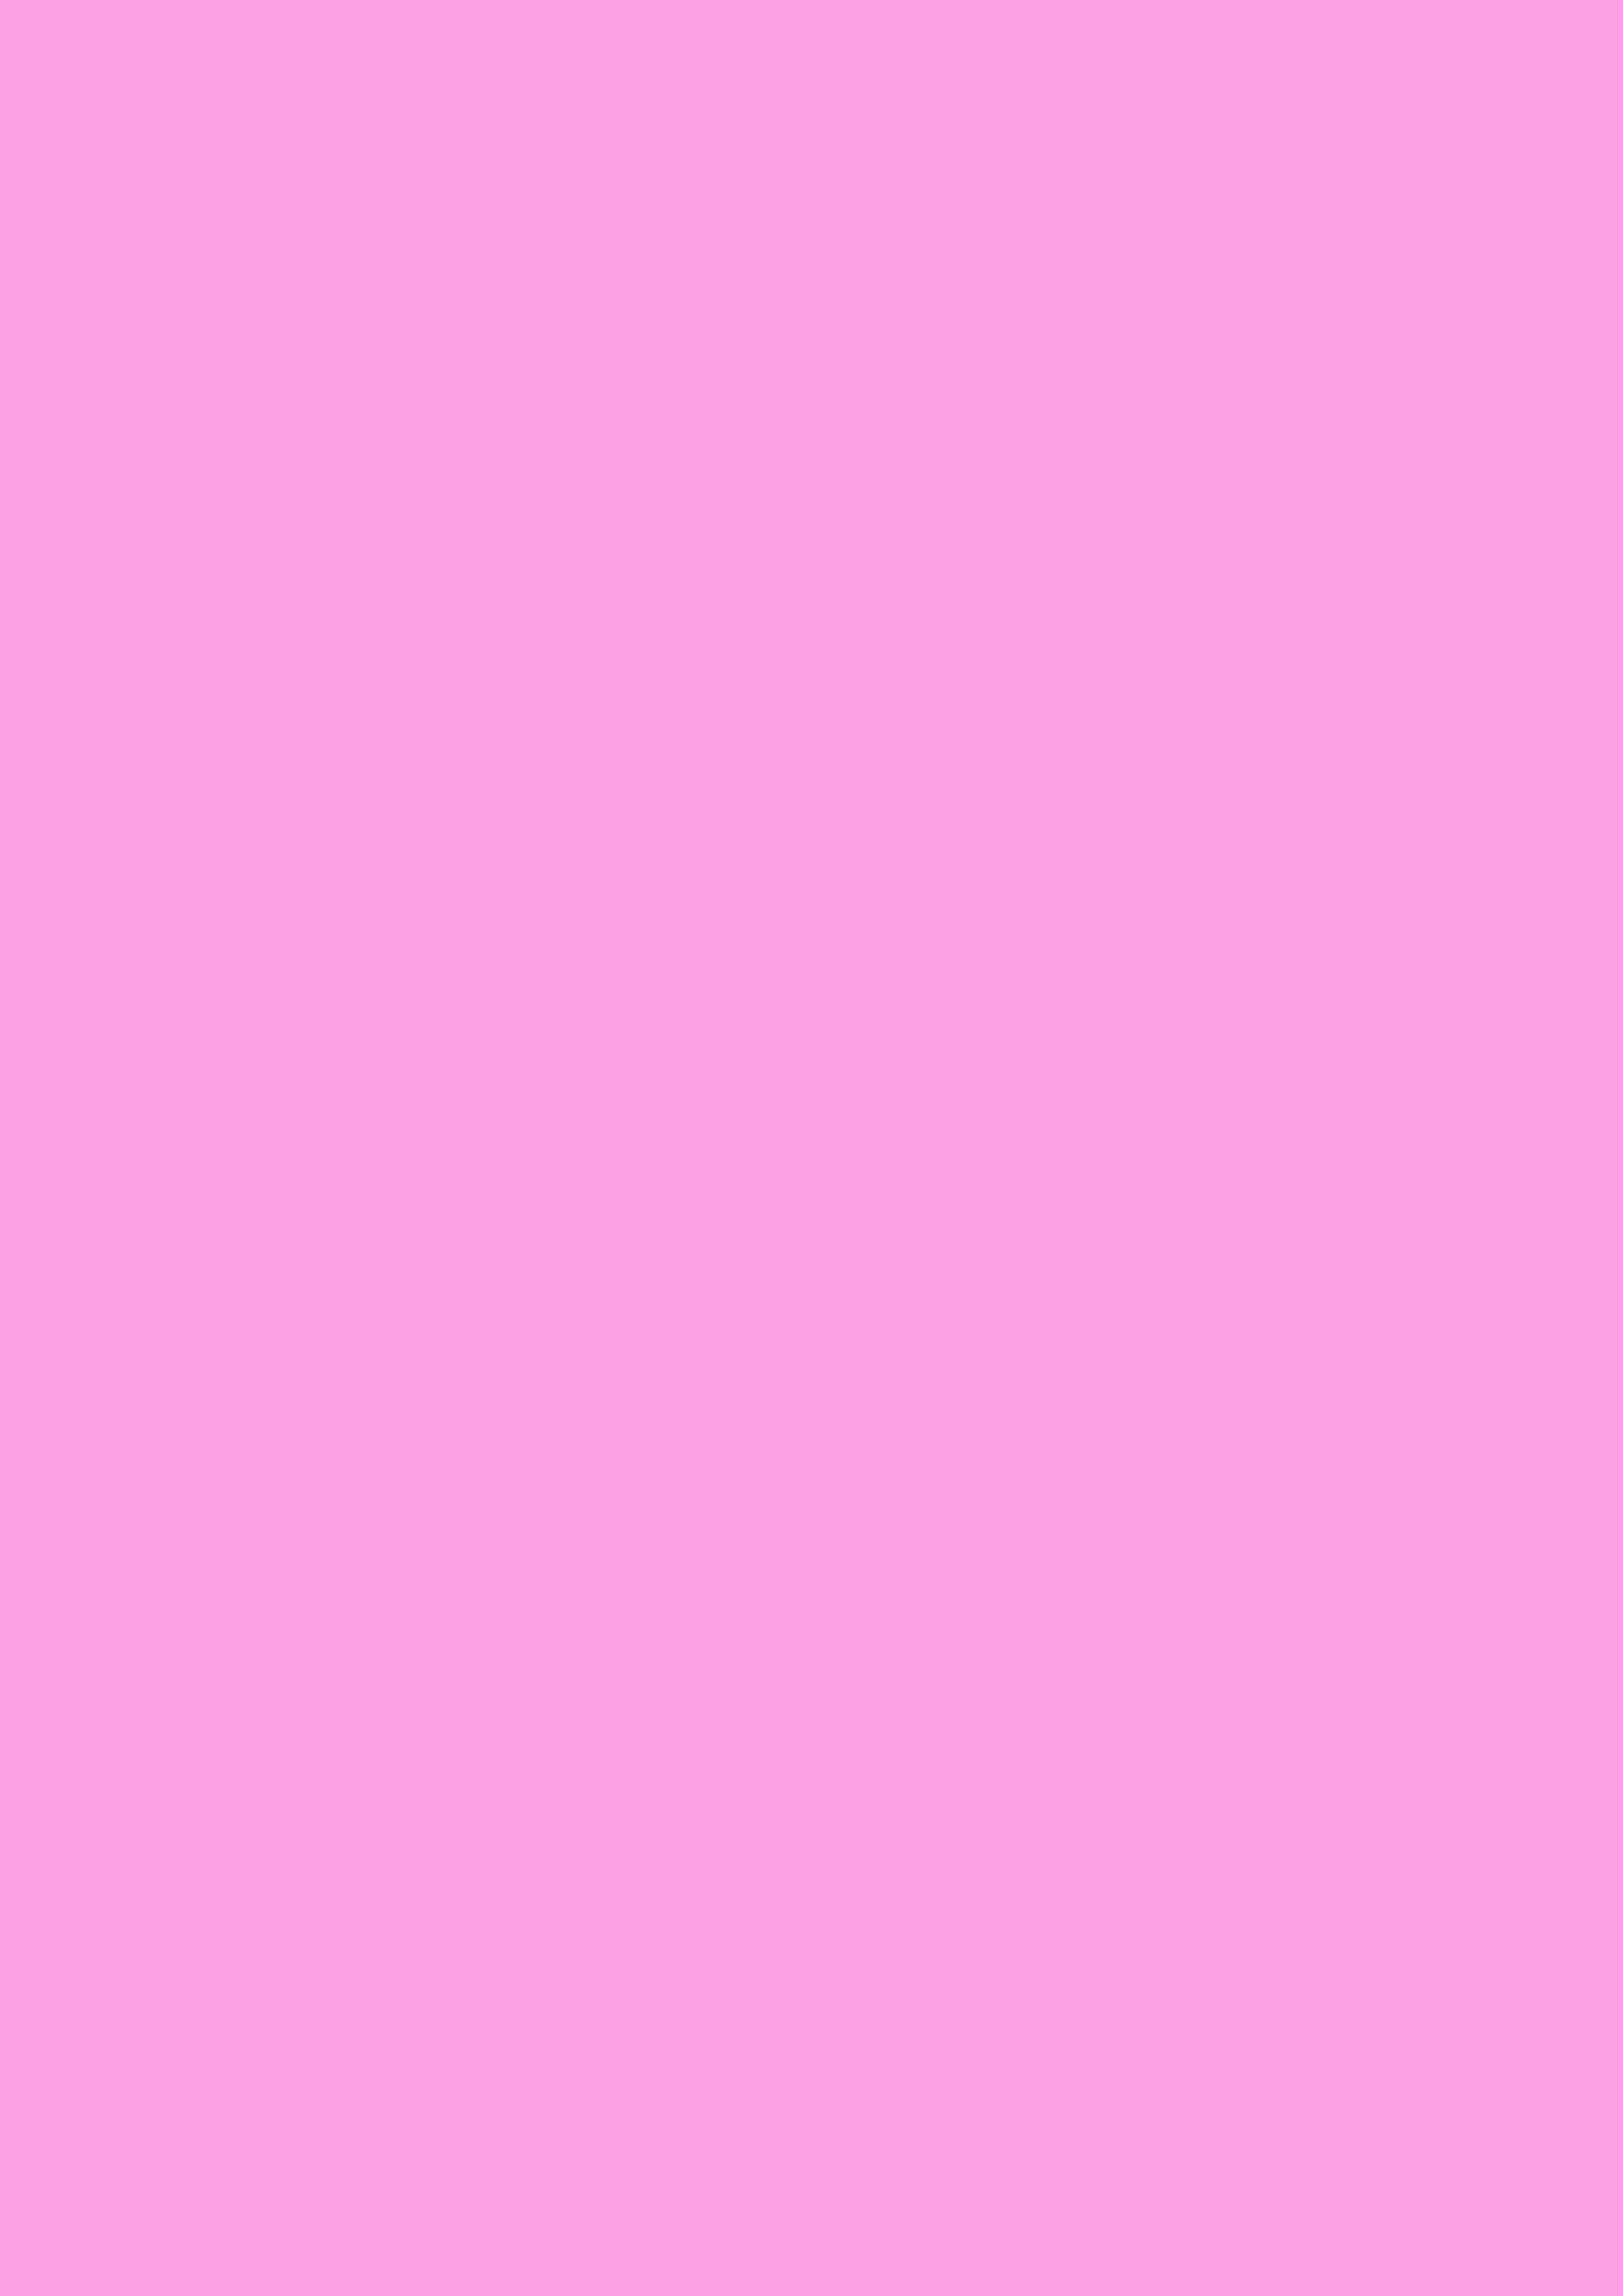 2480x3508 Lavender Rose Solid Color Background